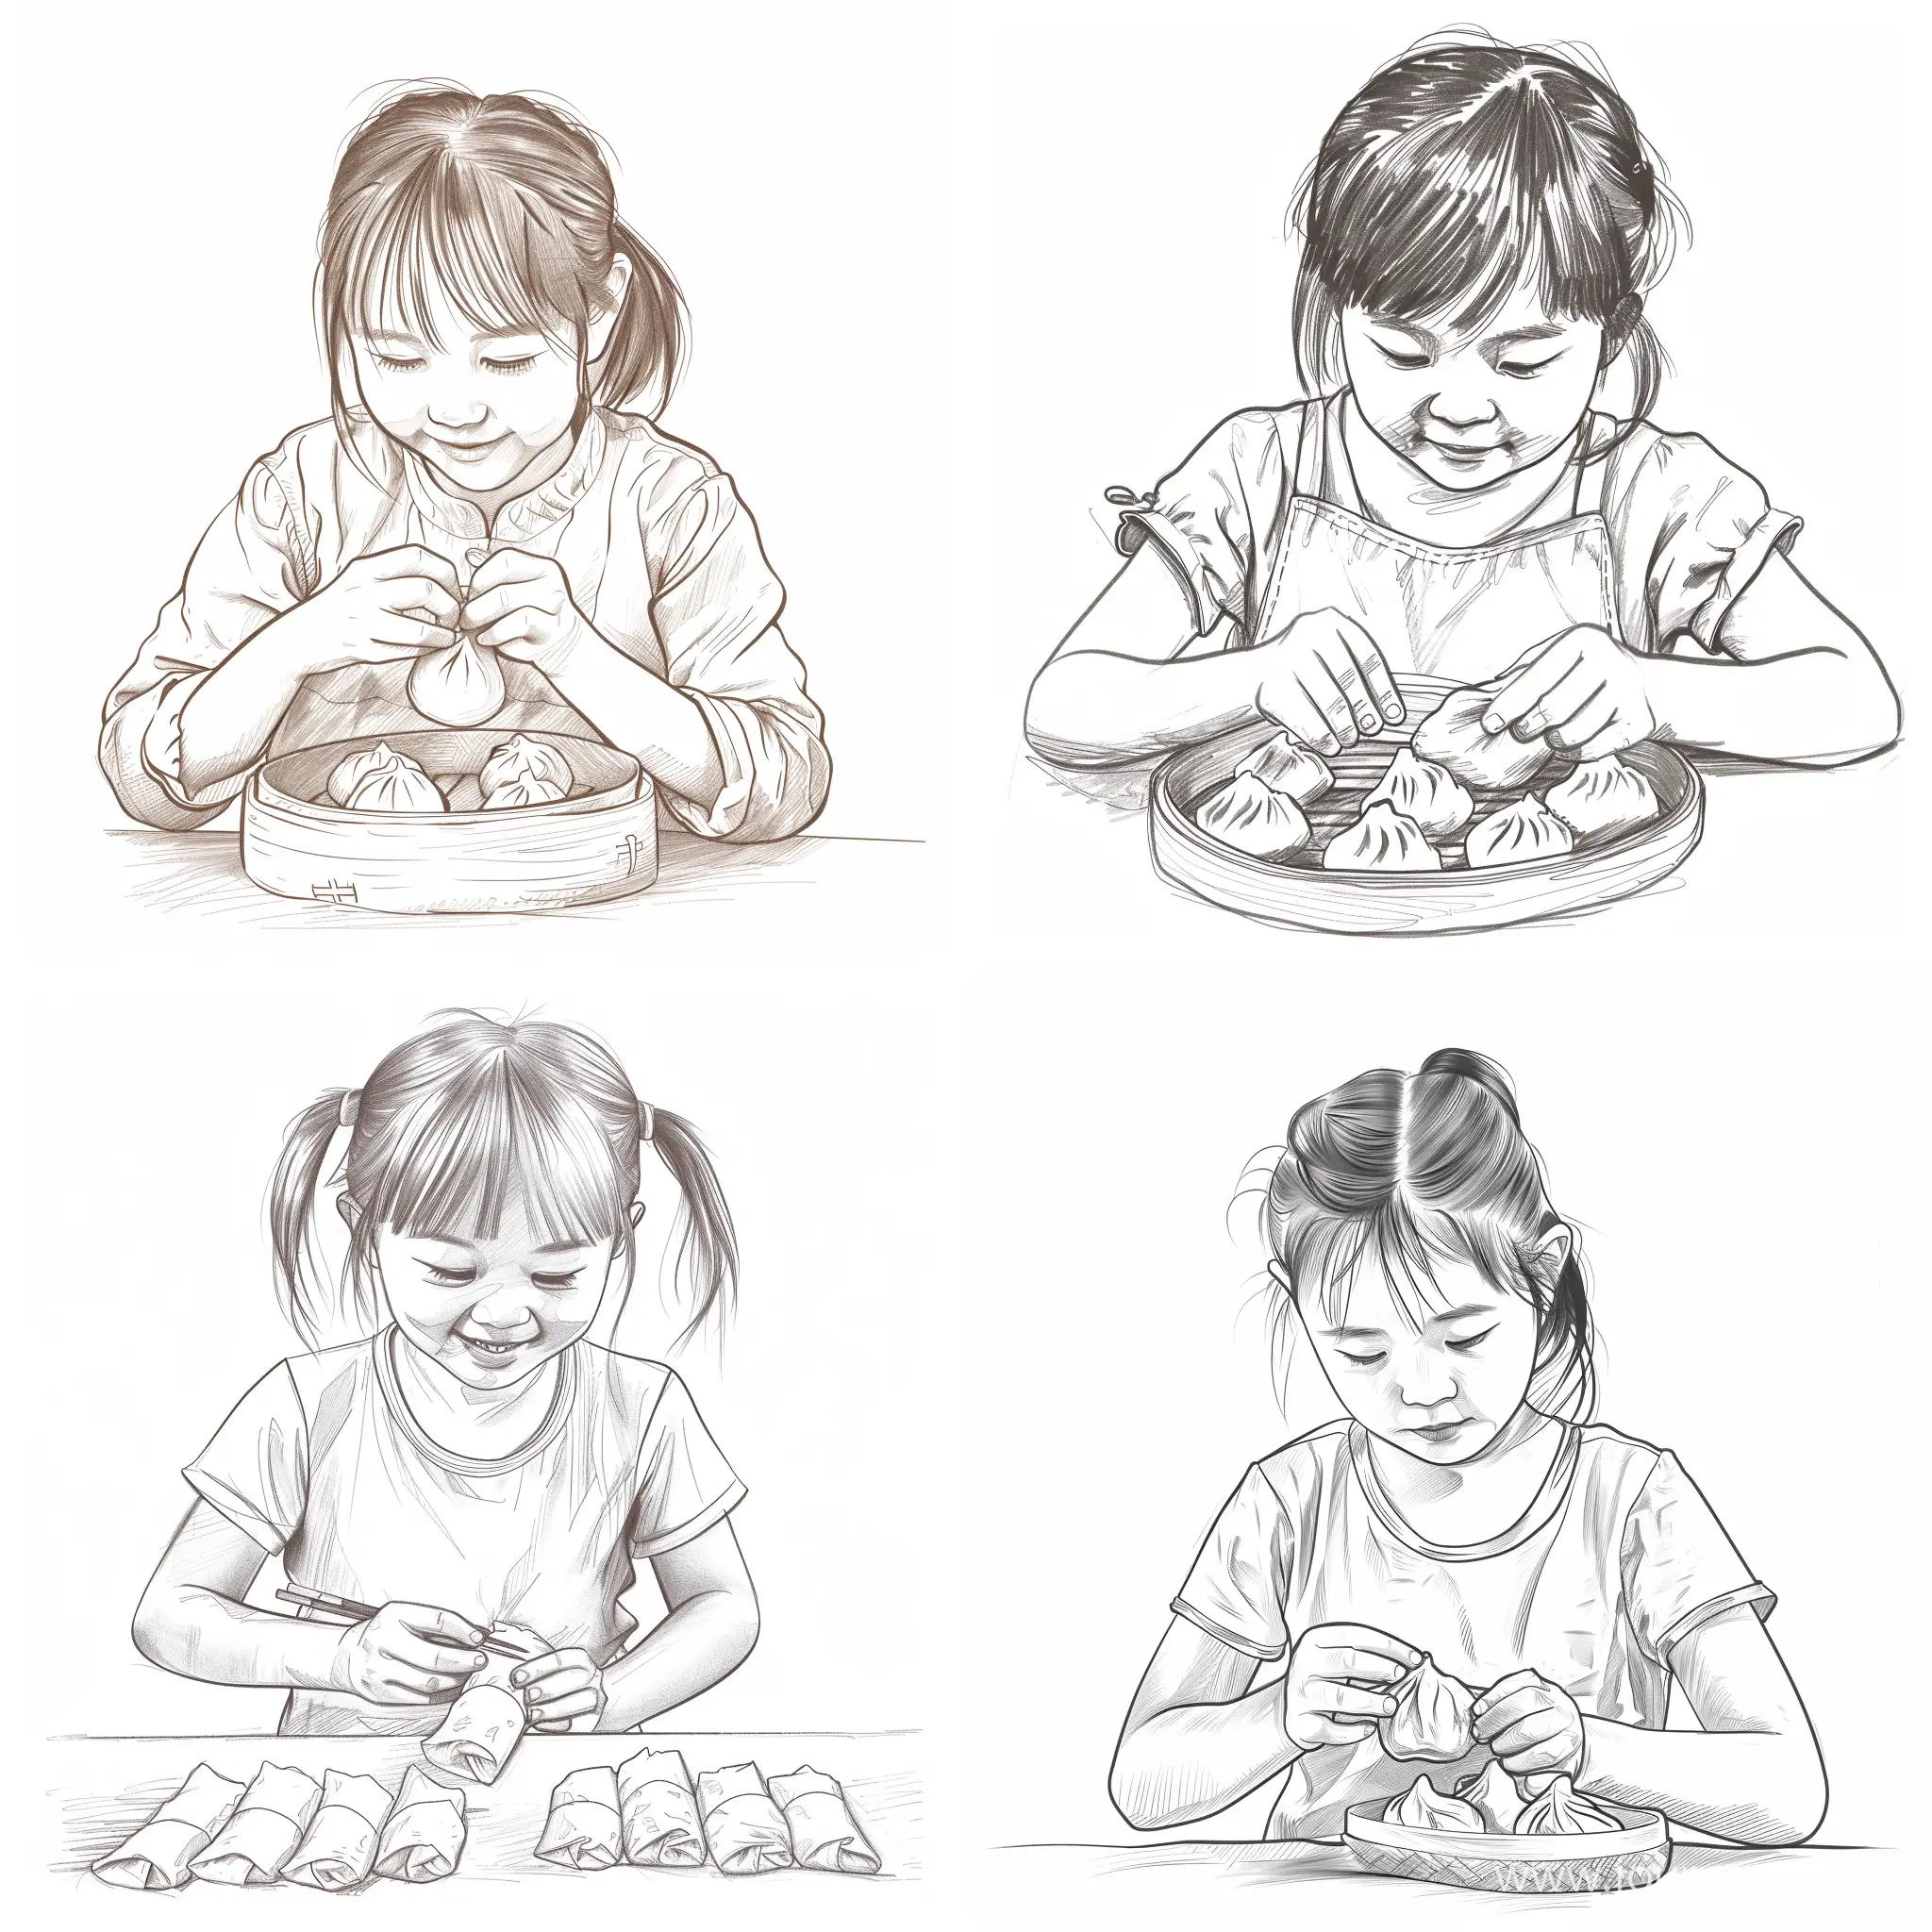 请用简笔画出一个9岁中国小女孩在包饺子的图片